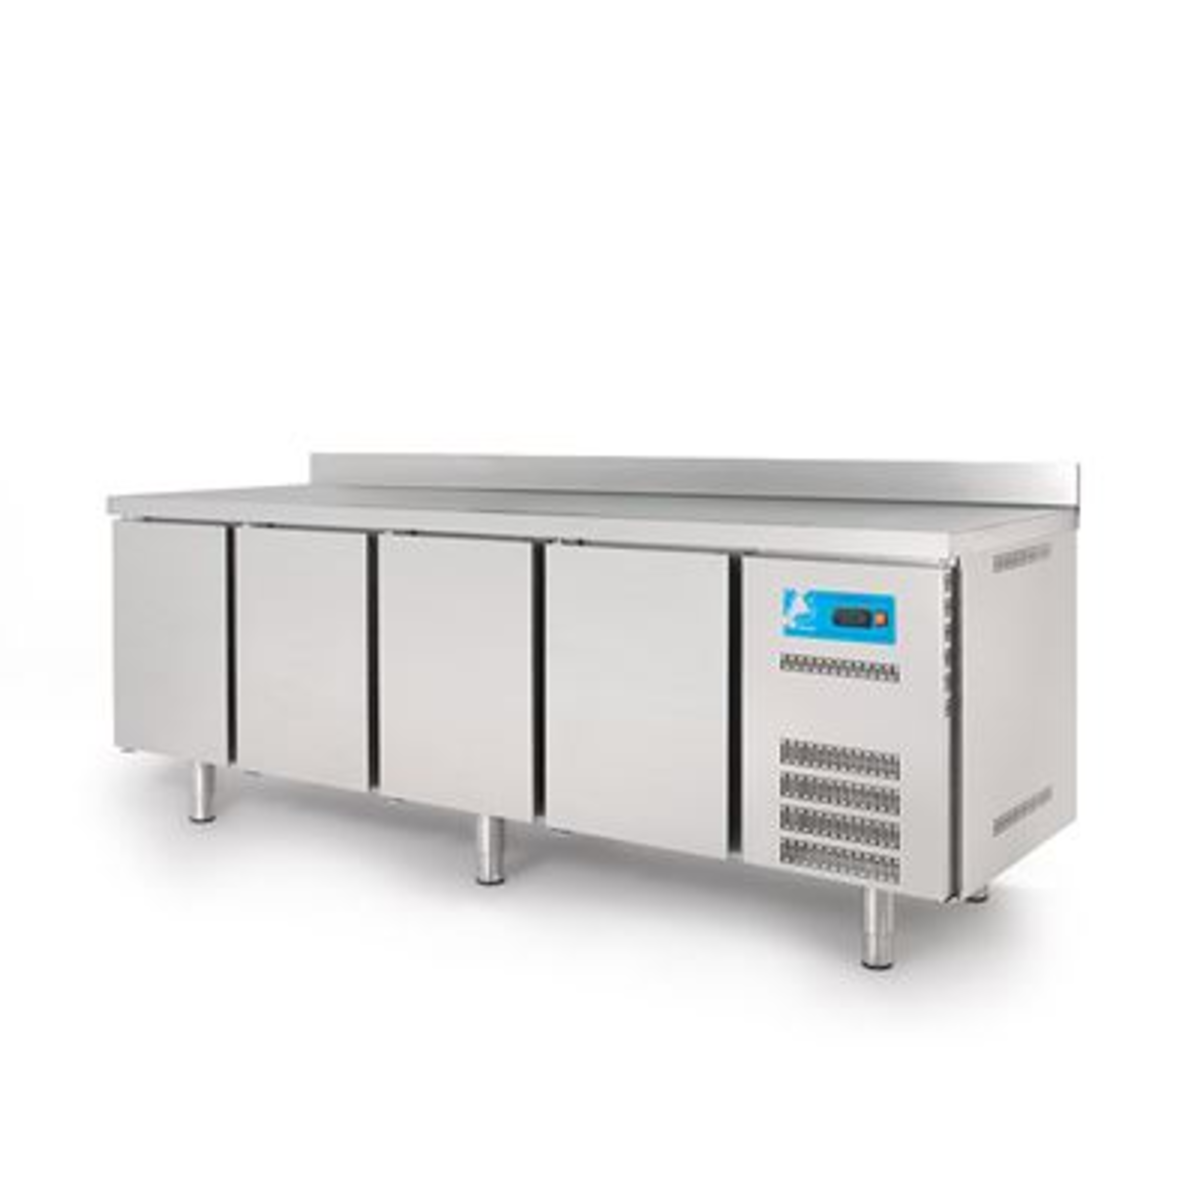 Table réfrigérée positive 4 portes inox AISI-430 560L - Coreco - TSR-250